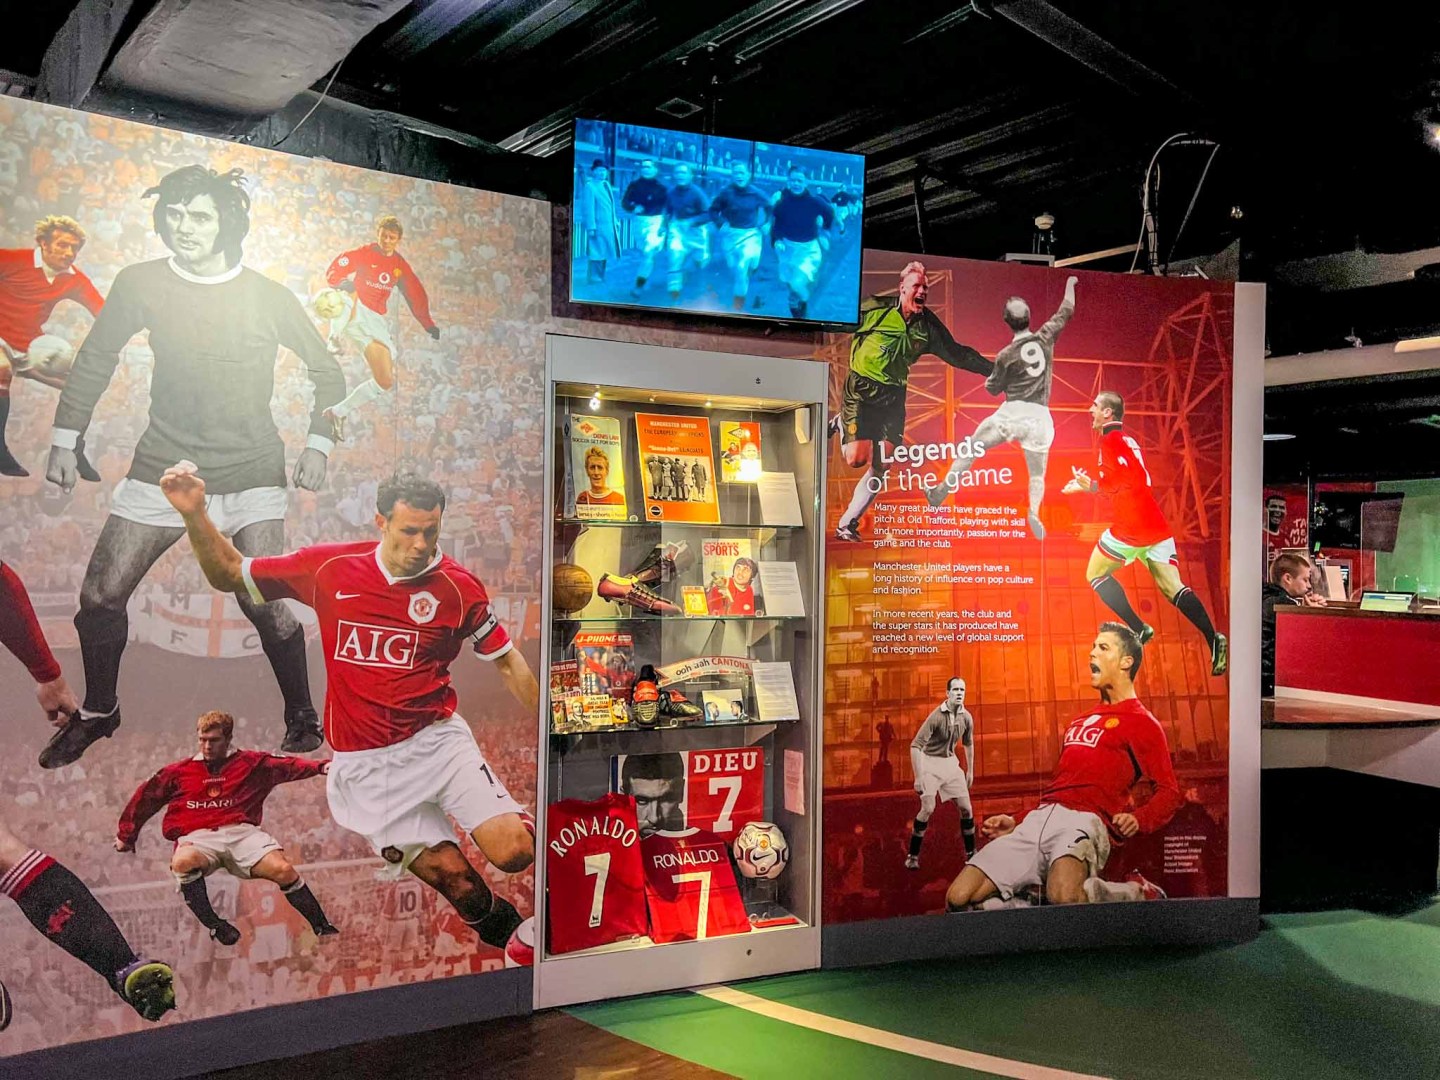 Visita al estadio del Manchester United, Museo 